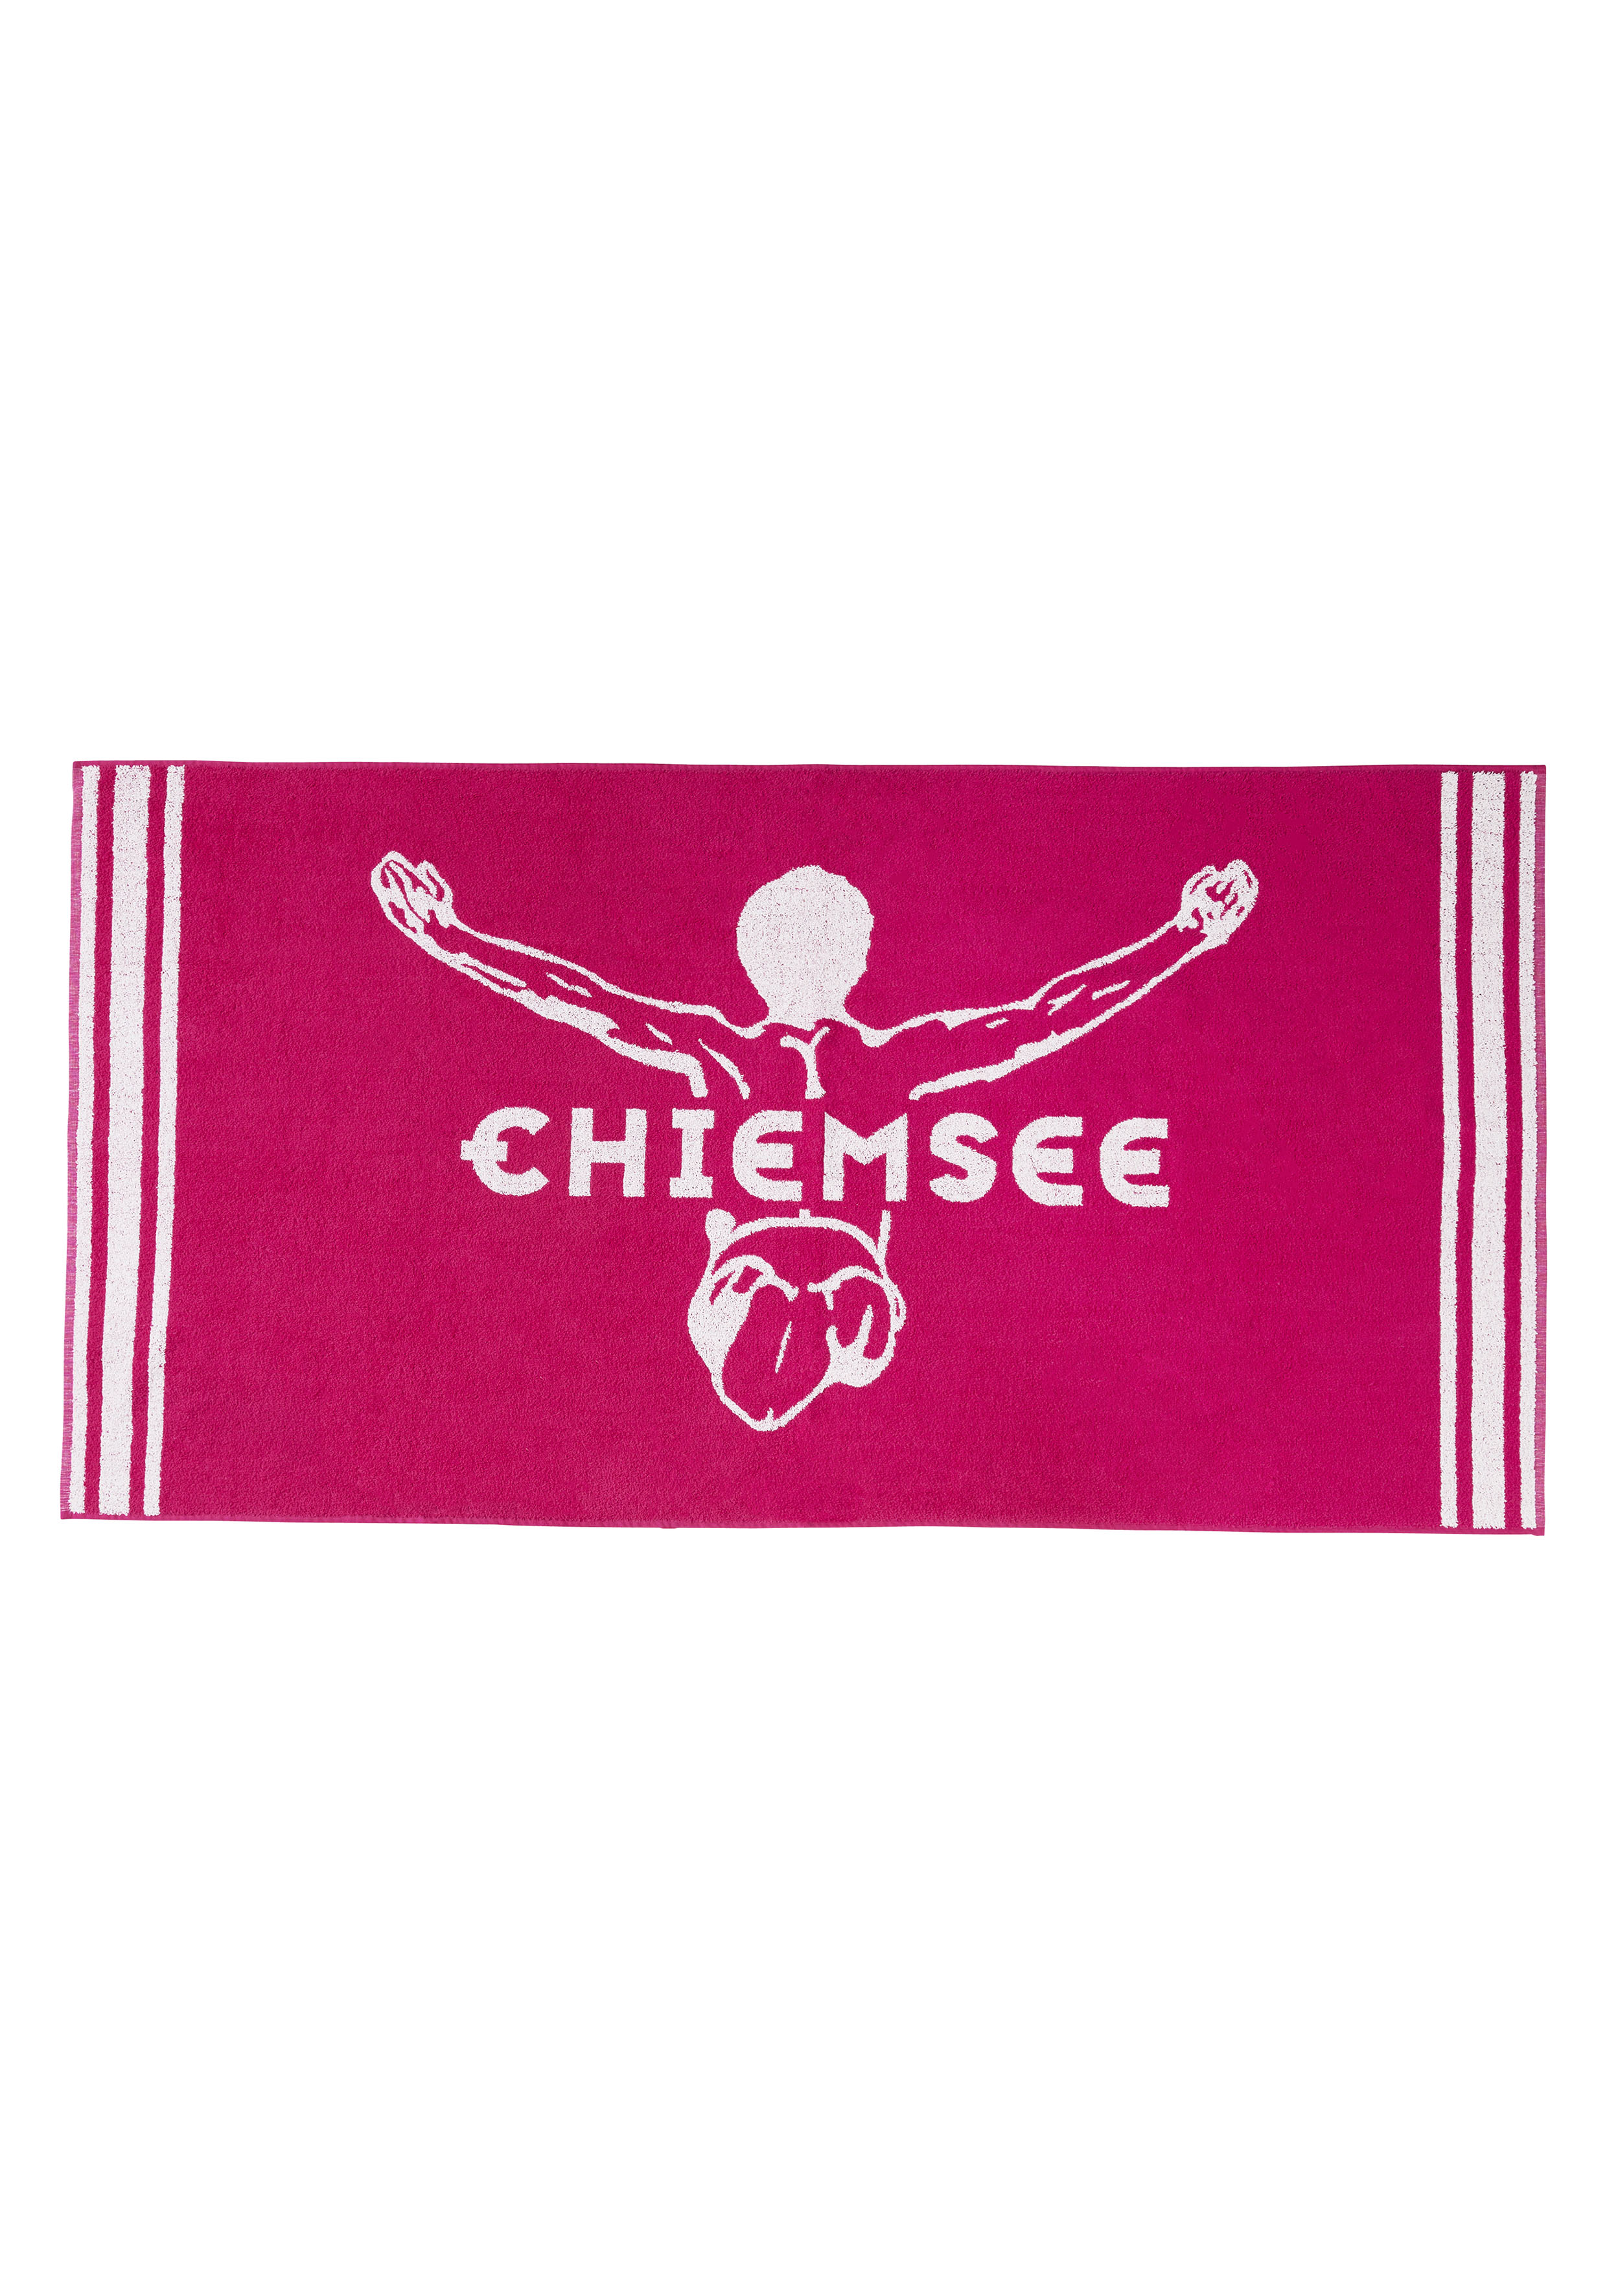  Chiemsee